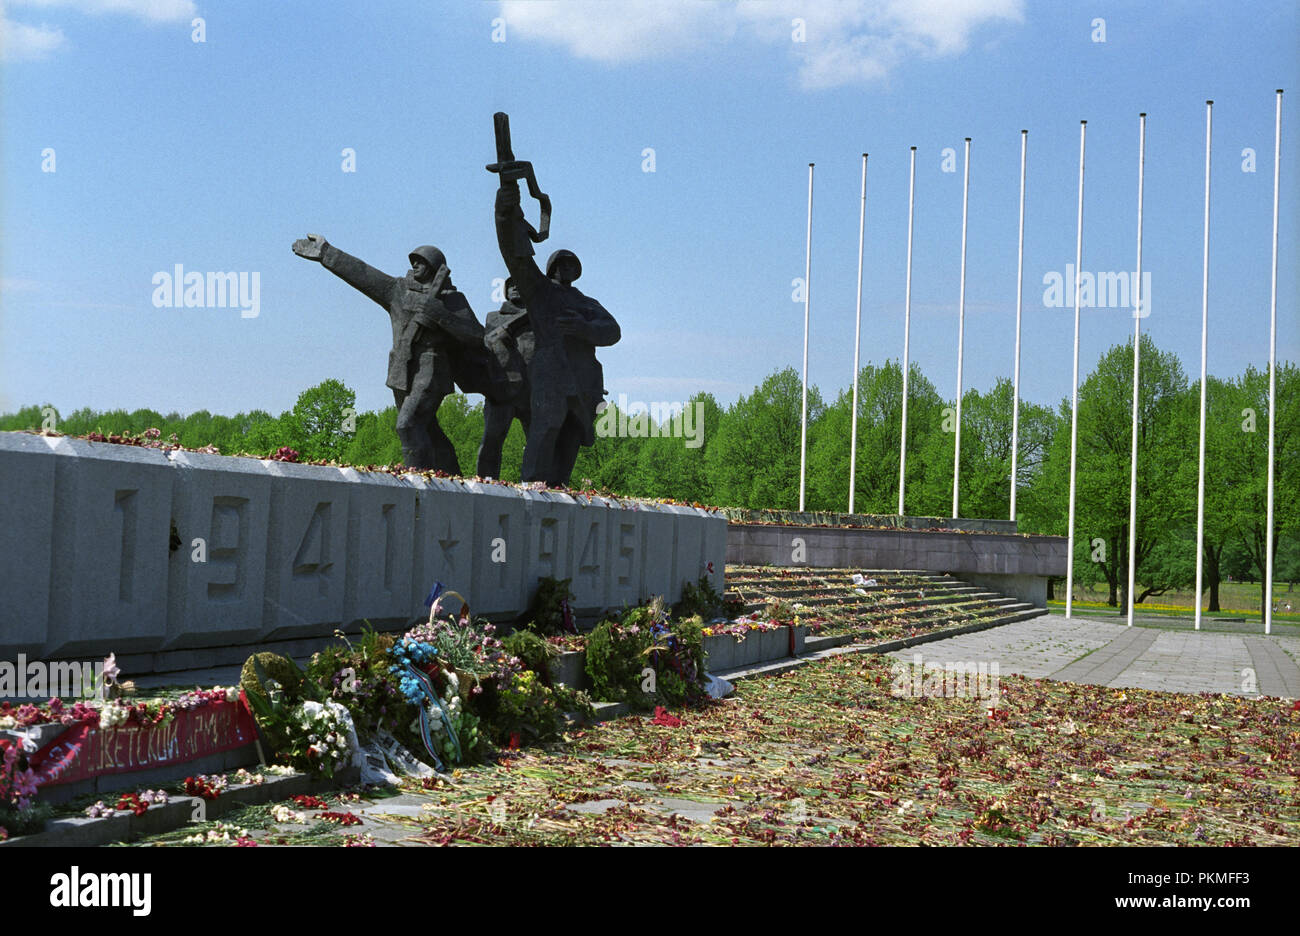 Monument commémoratif de guerre soviétique à Riga Lettonie Mai 2007 érigé en 1985 pour commémorer la victoire de l'armée soviétique sur l'Allemagne nazie pendant la Seconde Guerre mondiale Banque D'Images